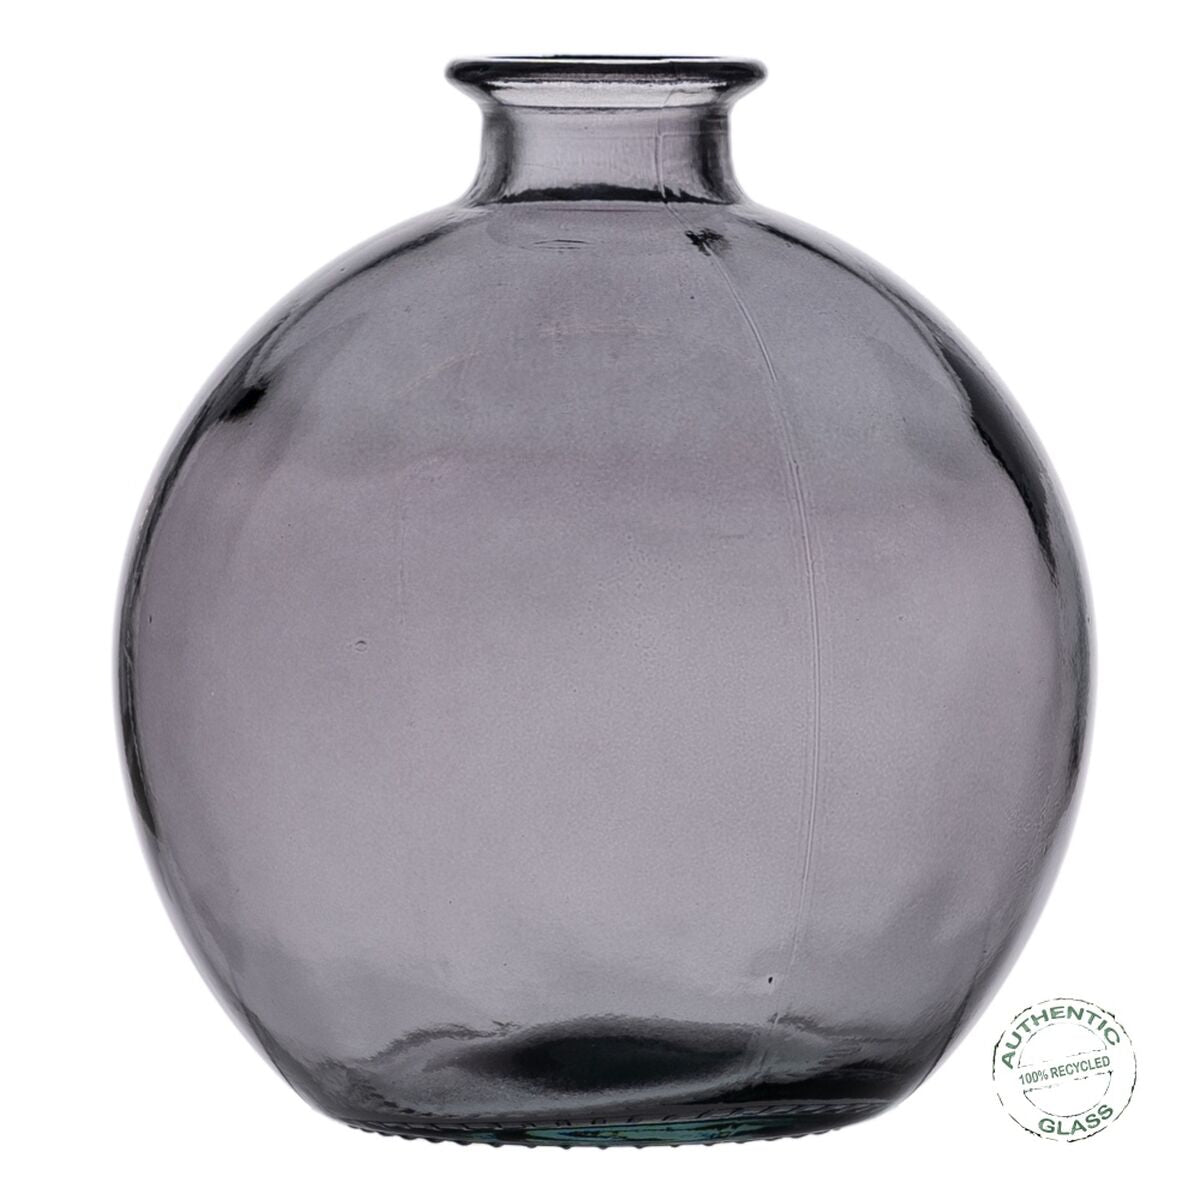 Vase Grau Recyceltes Glas 16 x 16 x 18 cm